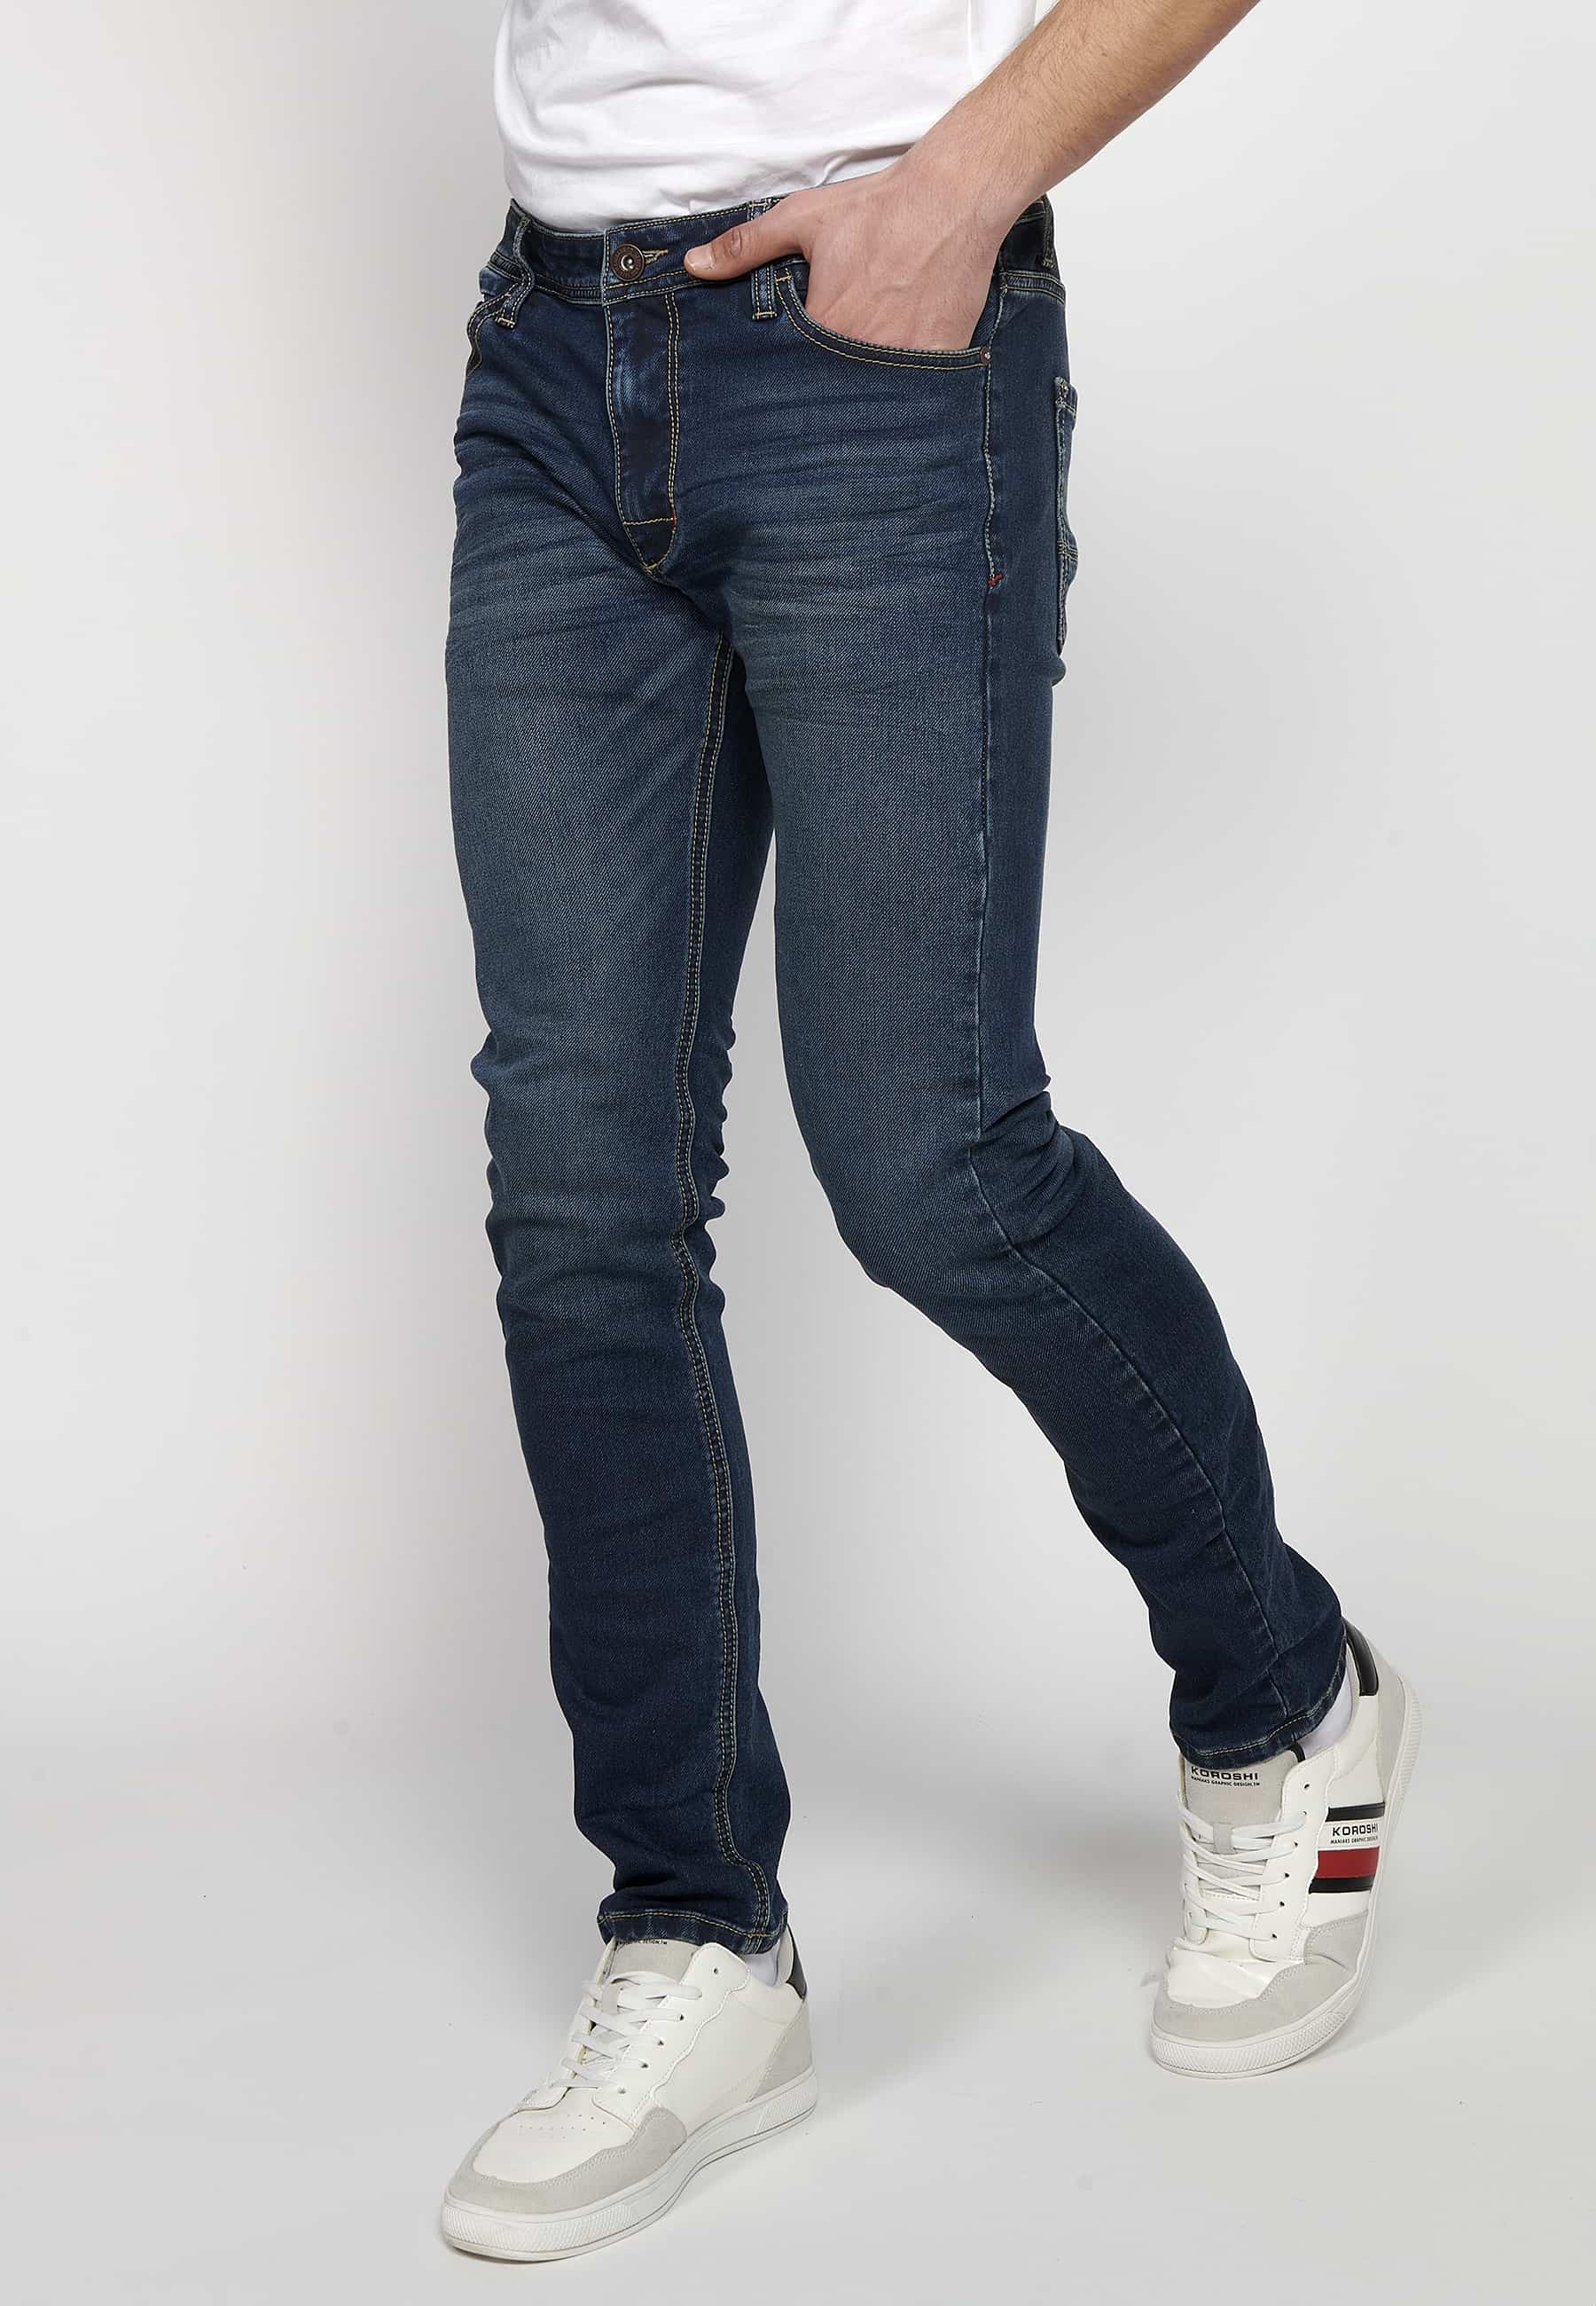 Pantalons llargs Jeans slim fit amb Tancament davanter amb cremallera i botó amb Cinc butxaques, un ceriller de Color Blau per a Home 1